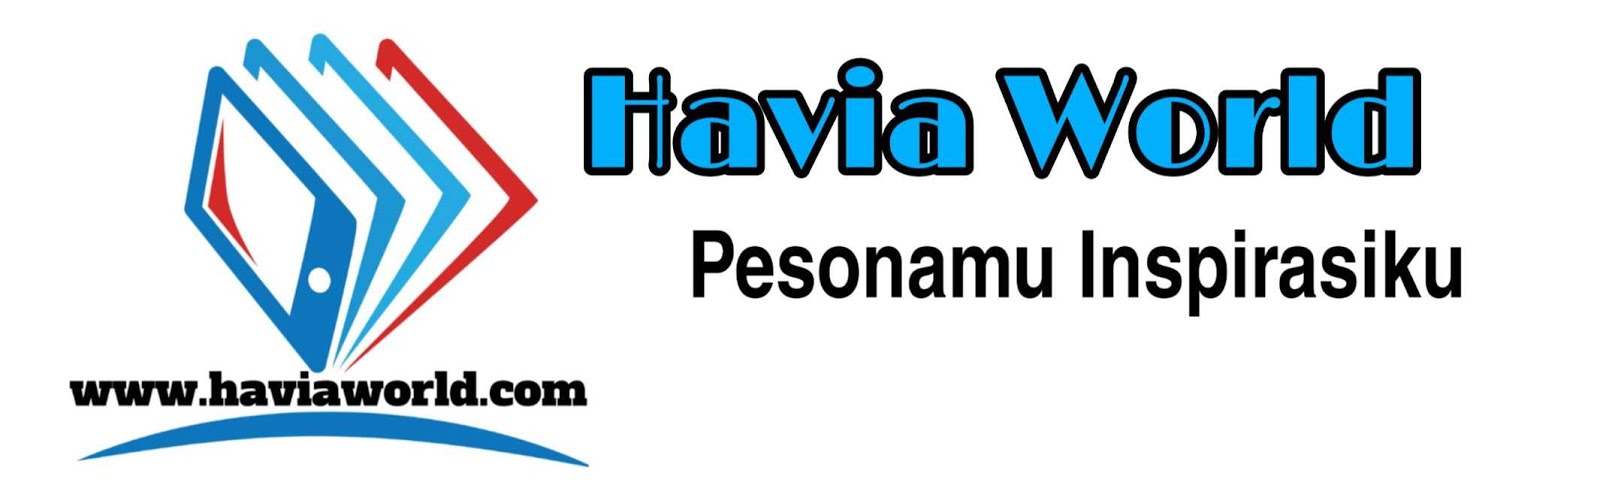 HAVIA WORLD